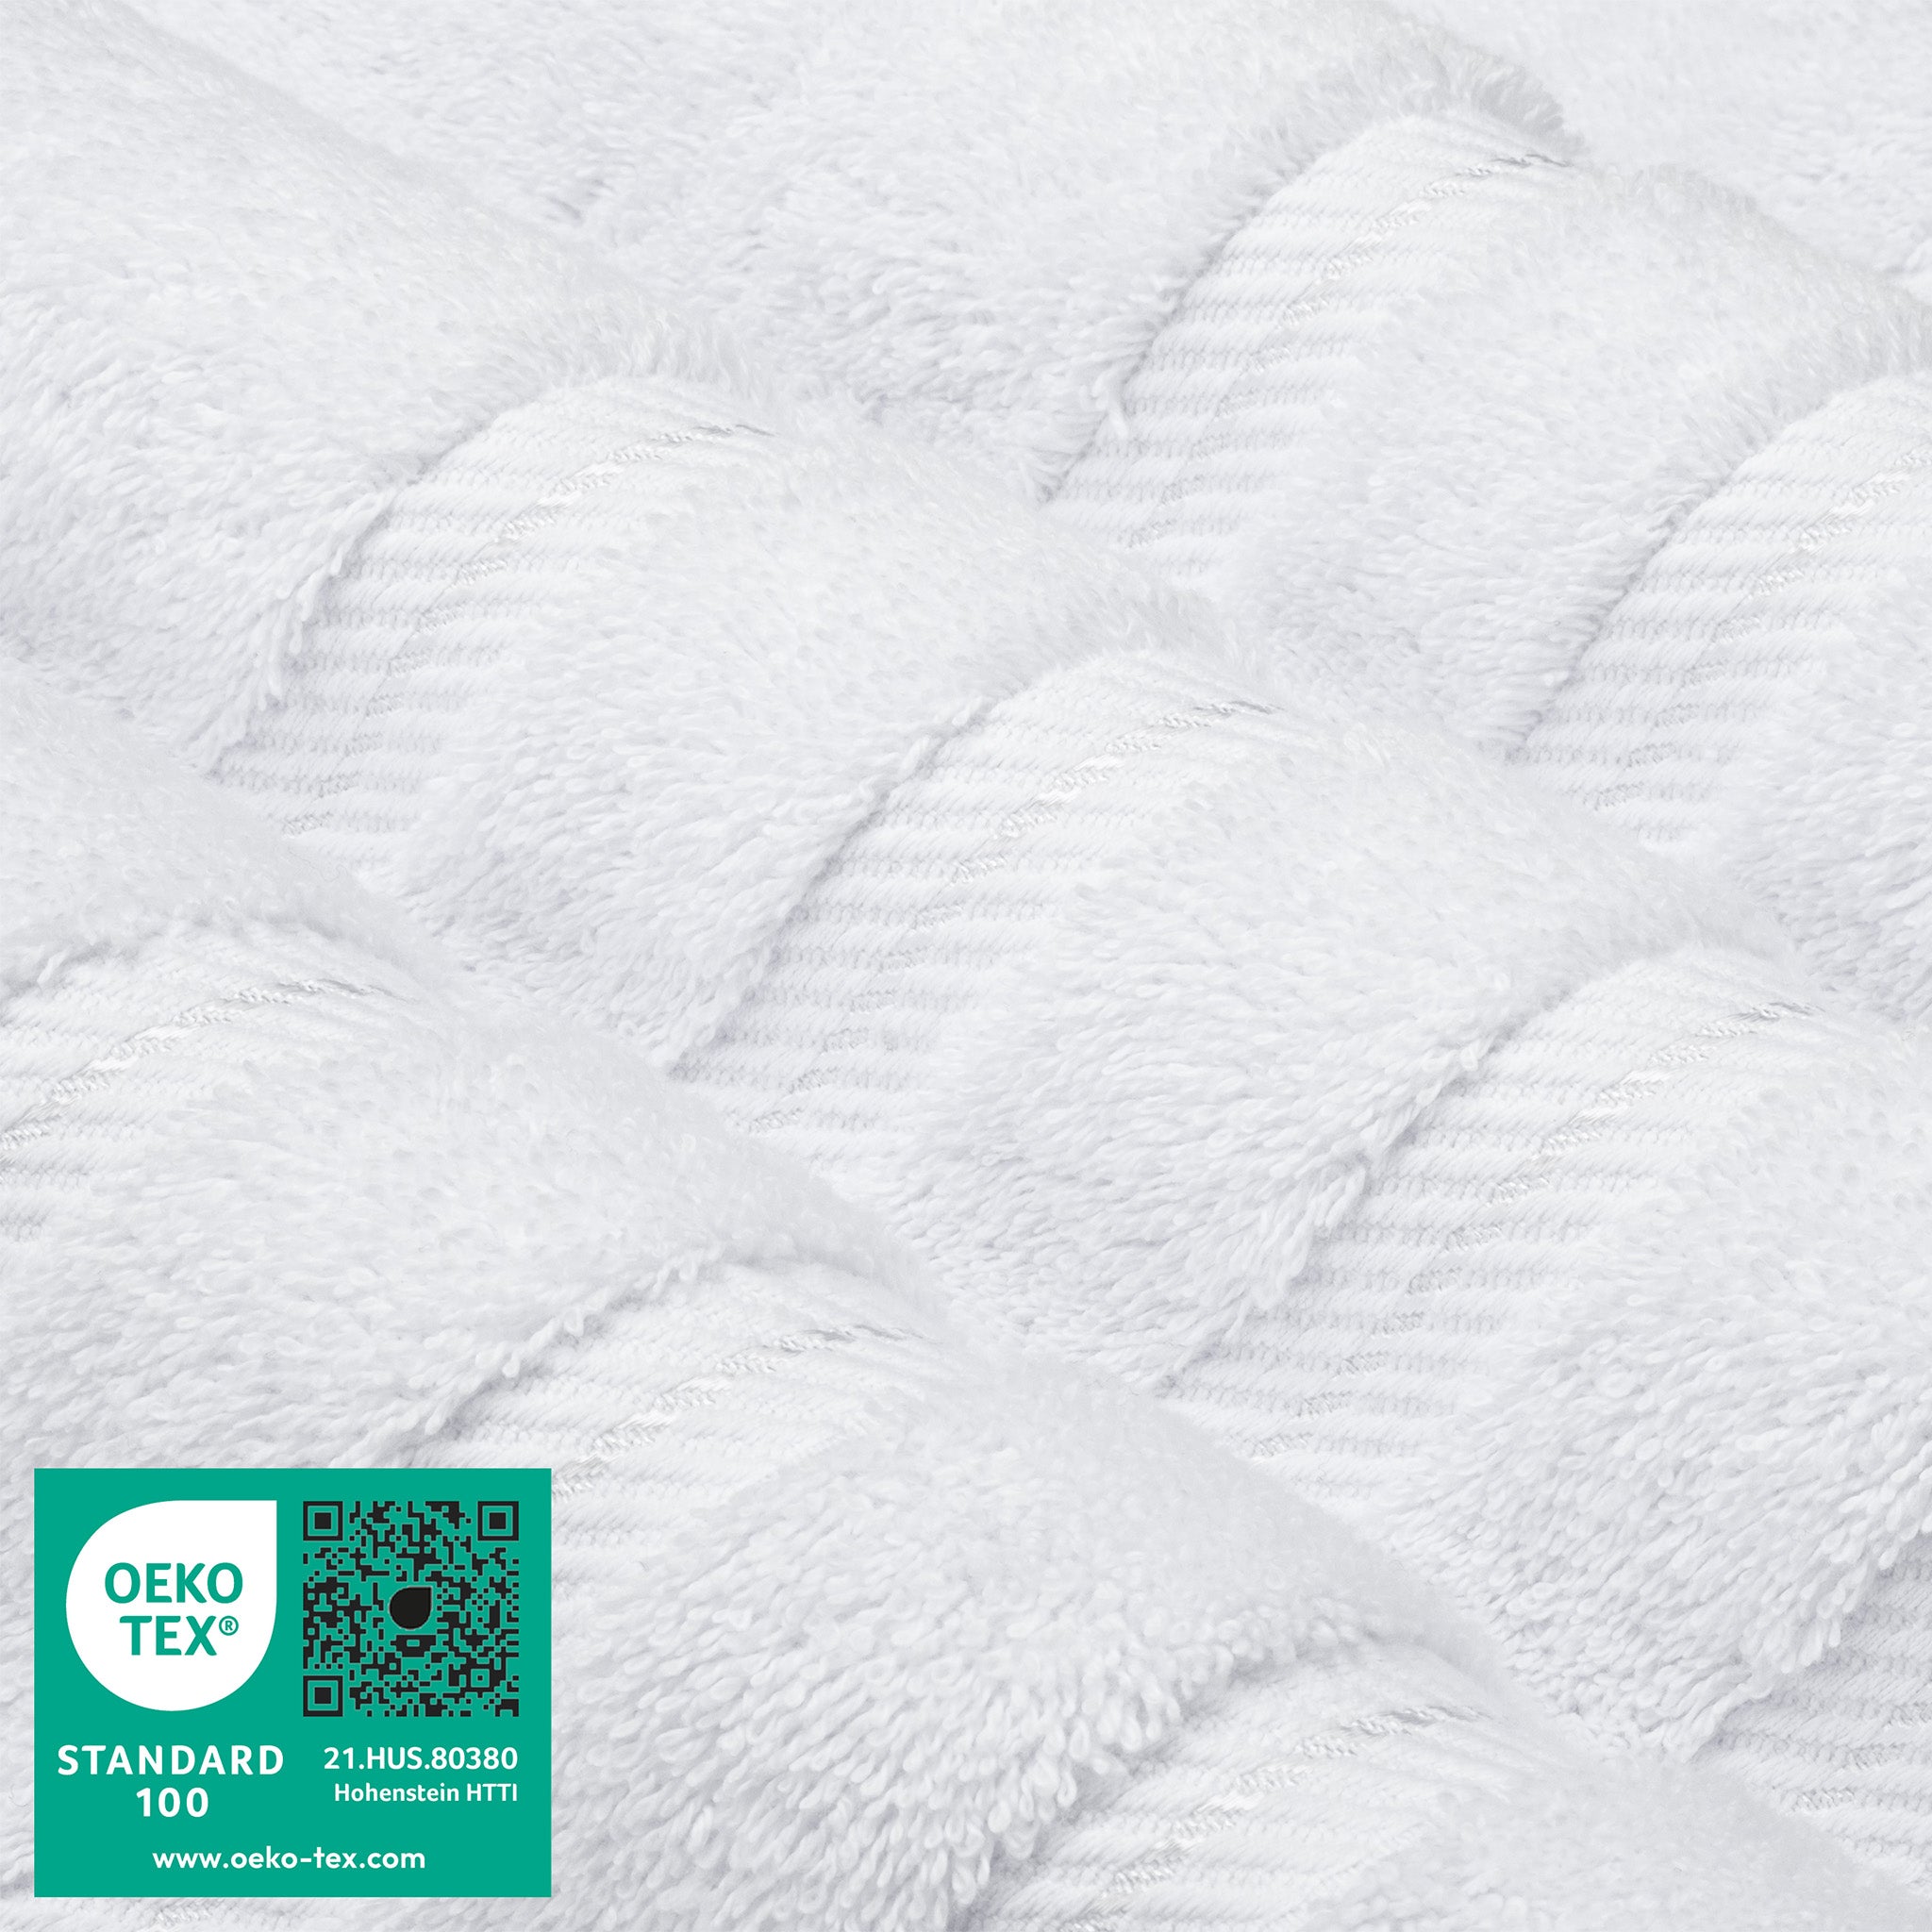 American Soft Linen 100% Turkish Cotton 6 Piece Towel Set Wholesale white-3